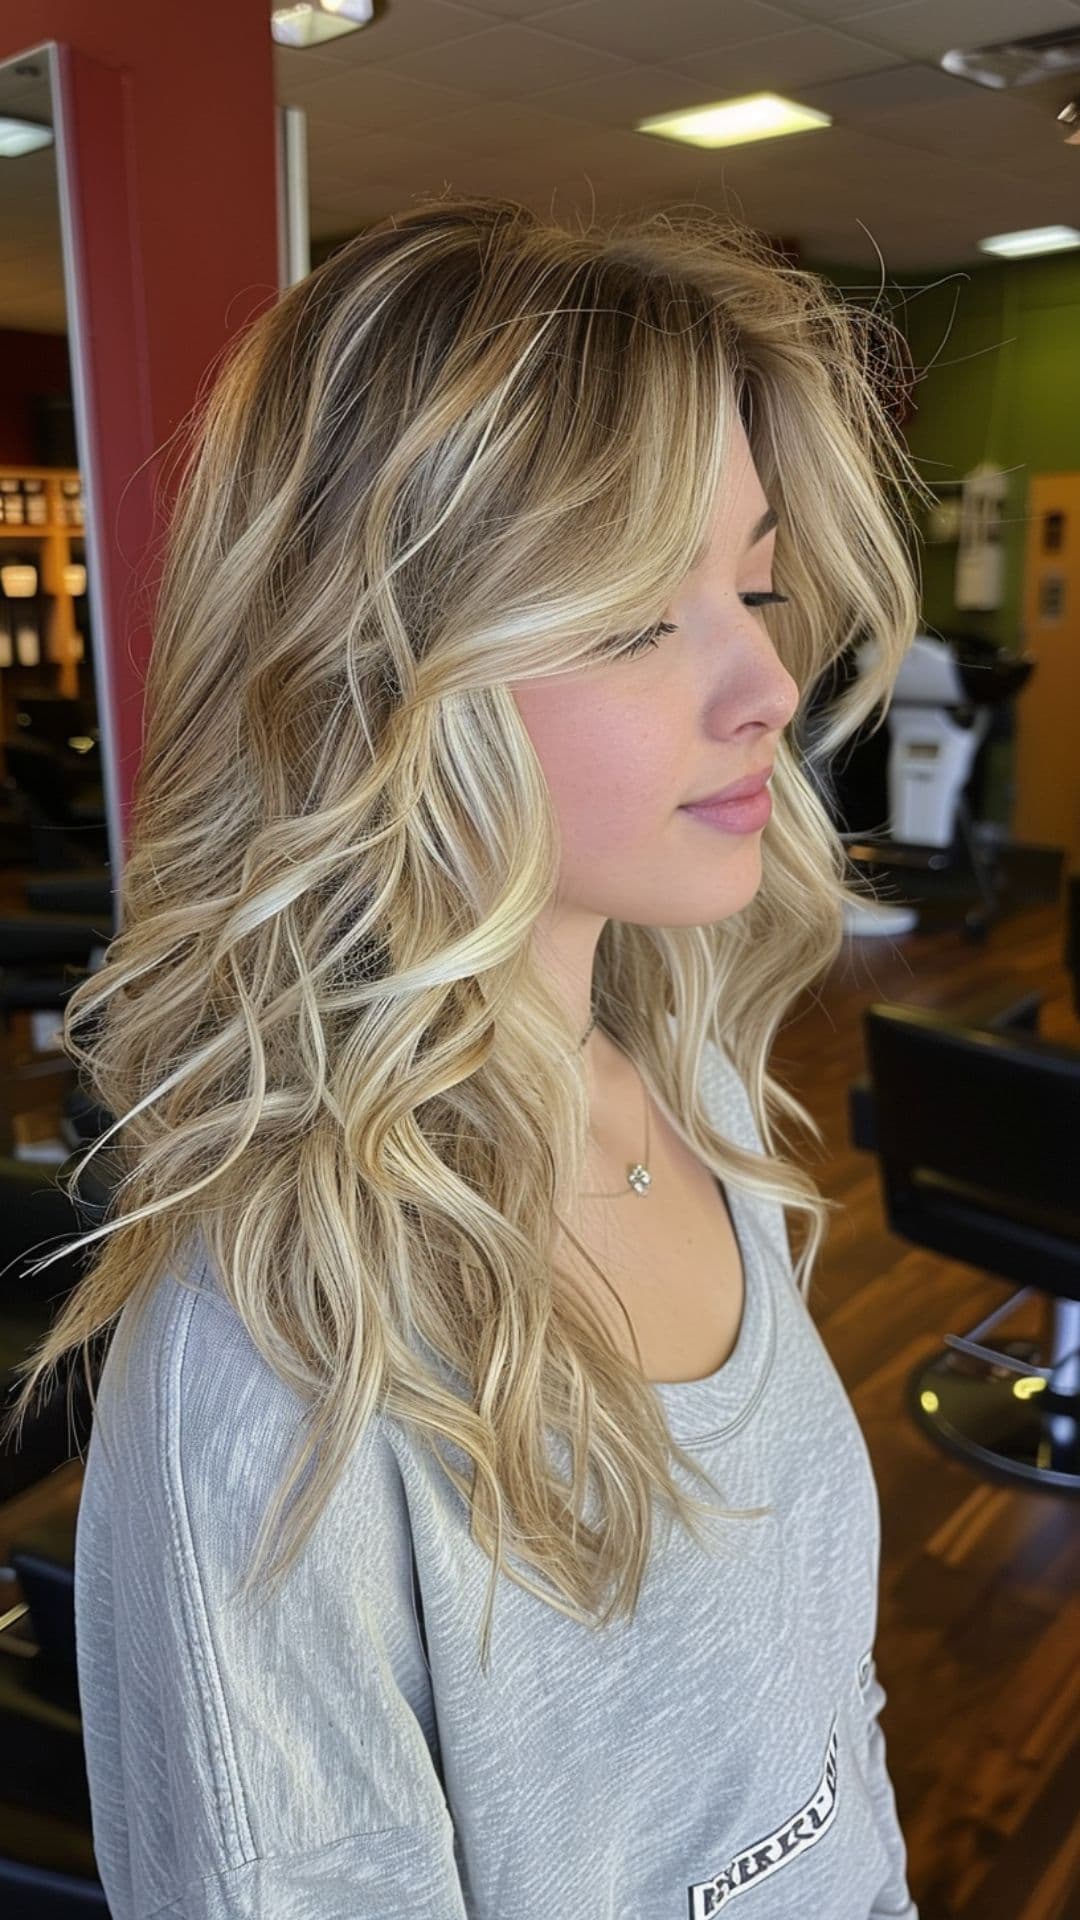 A woman modelling a warm beige blonde hair.